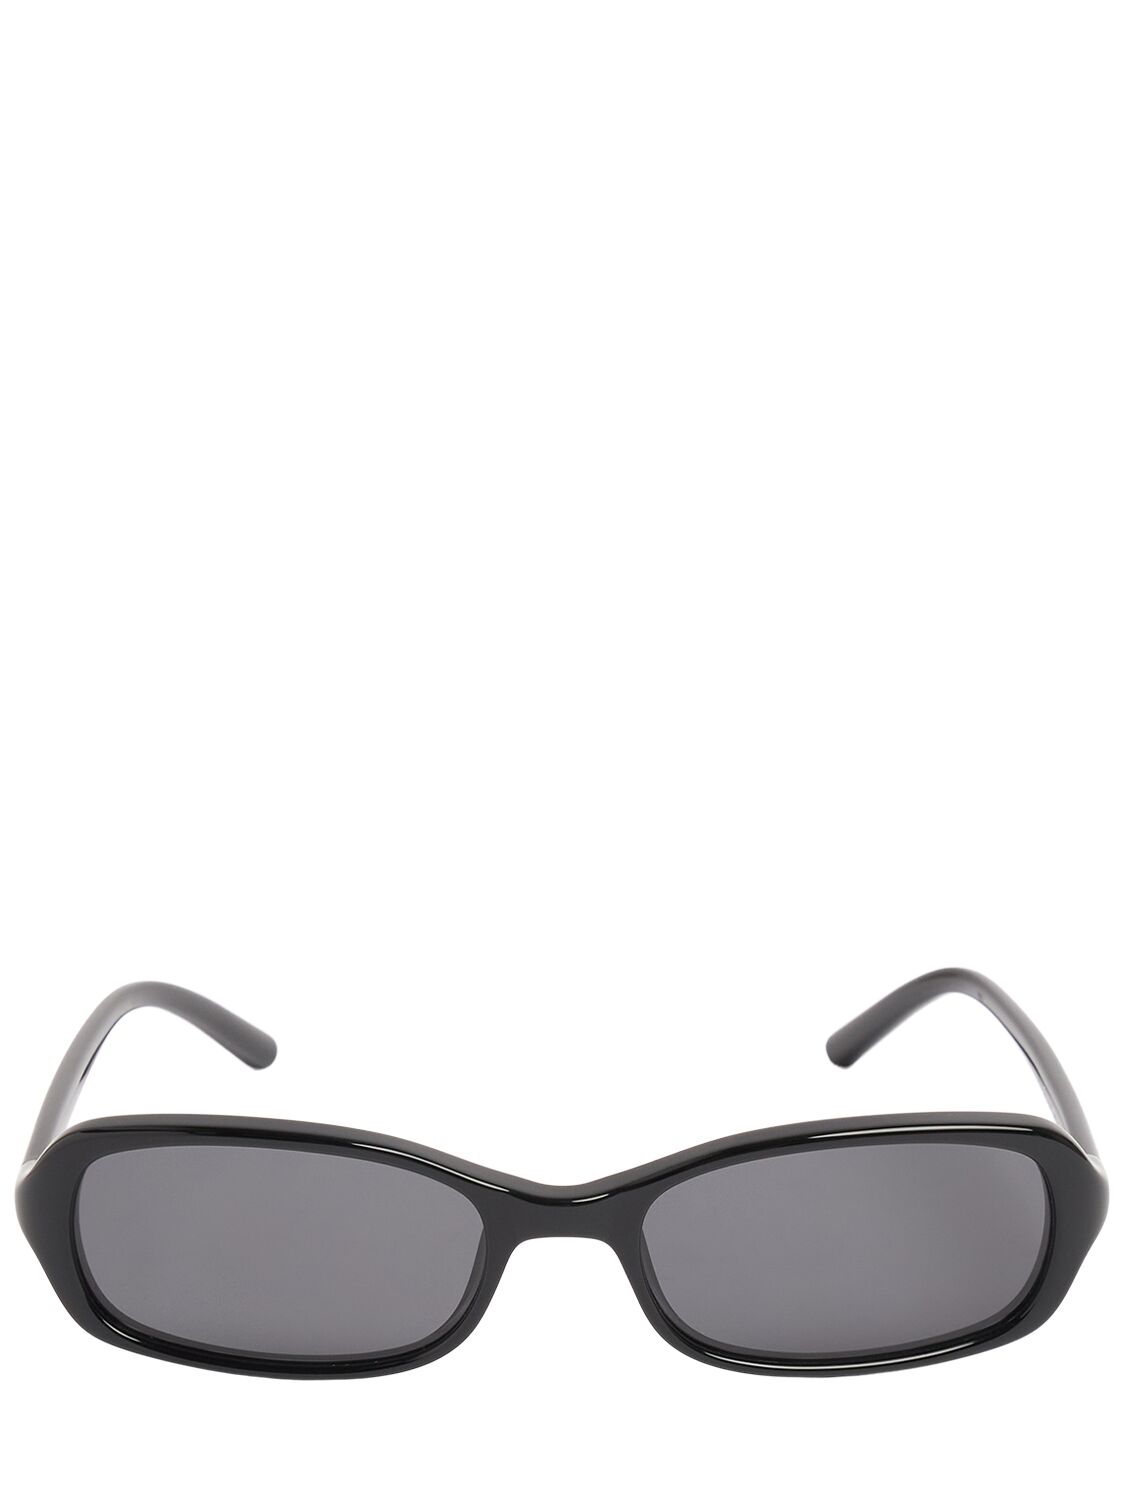 Chimi Code Round Acetate Sunglasses In Black